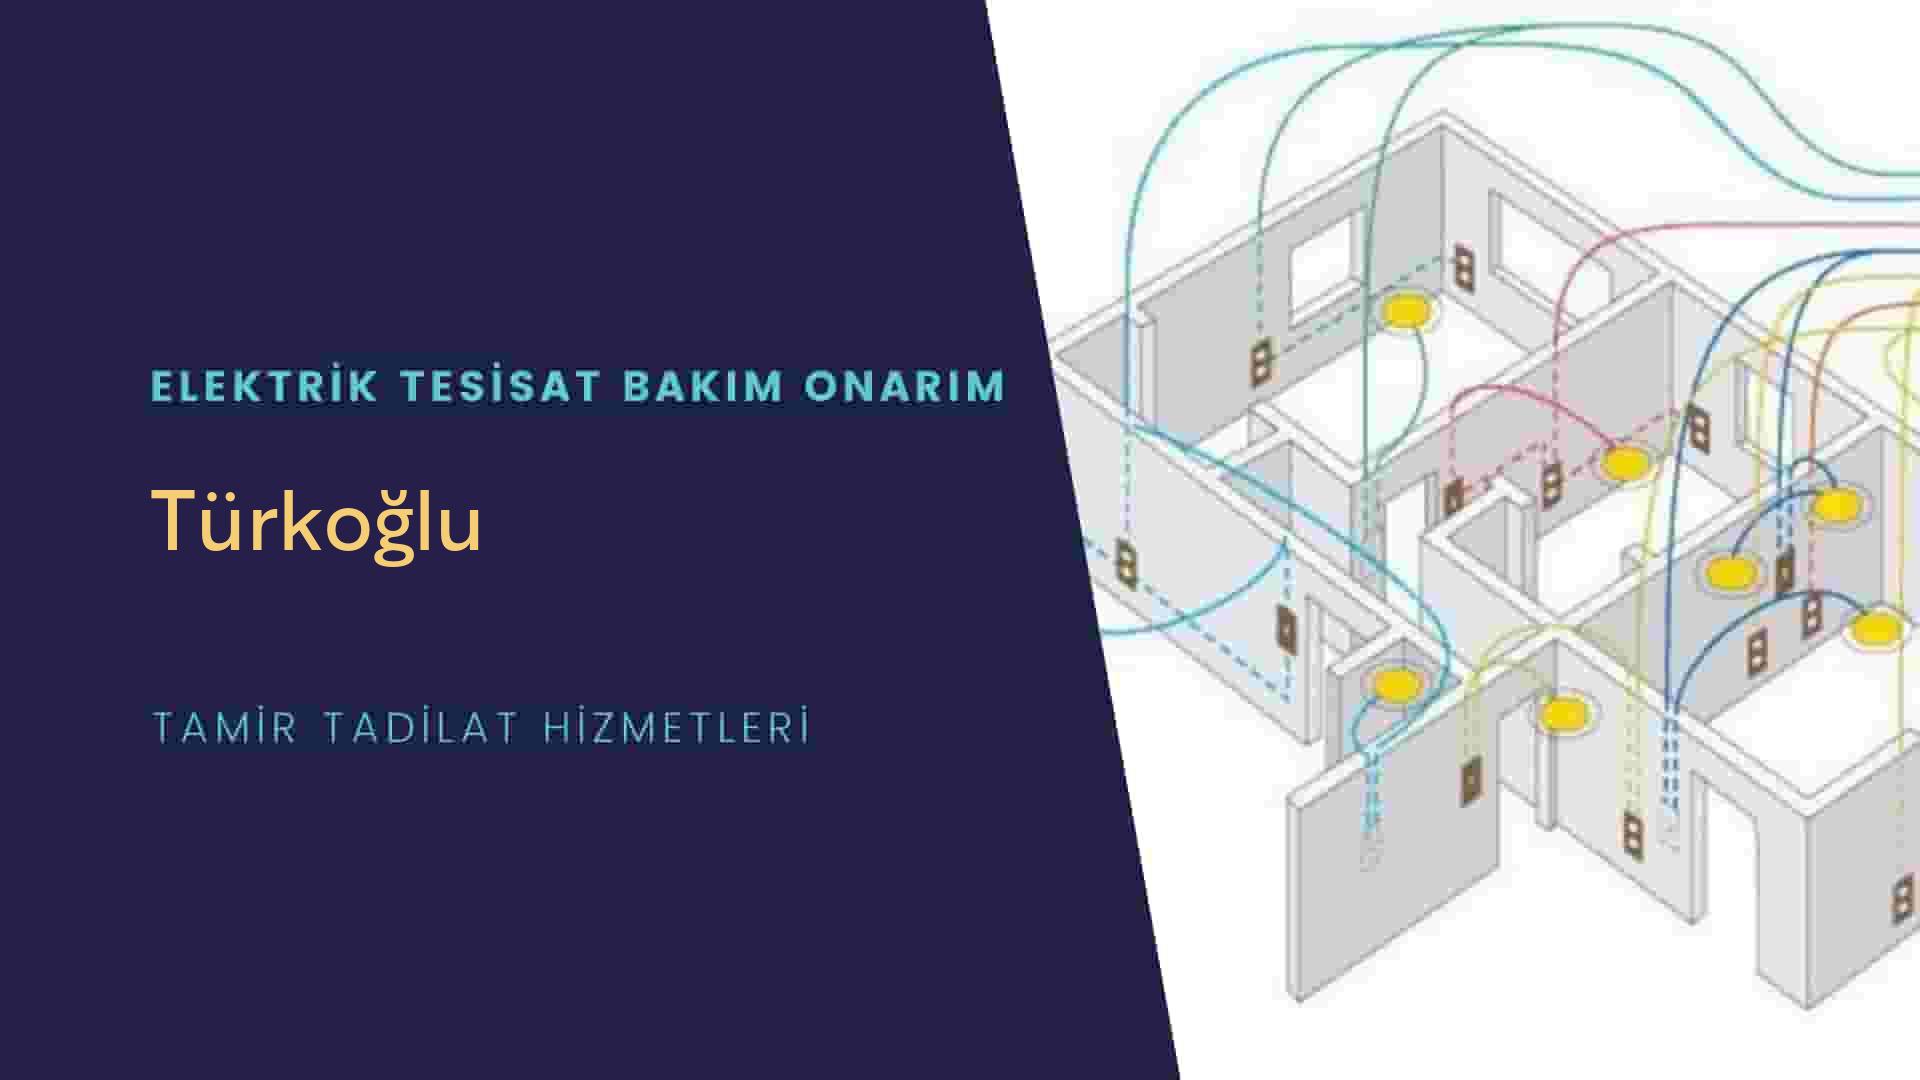 Türkoğlu'da elektrik tesisatı ustalarımı arıyorsunuz doğru adrestenizi Türkoğlu elektrik tesisatı ustalarımız 7/24 sizlere hizmet vermekten mutluluk duyar.